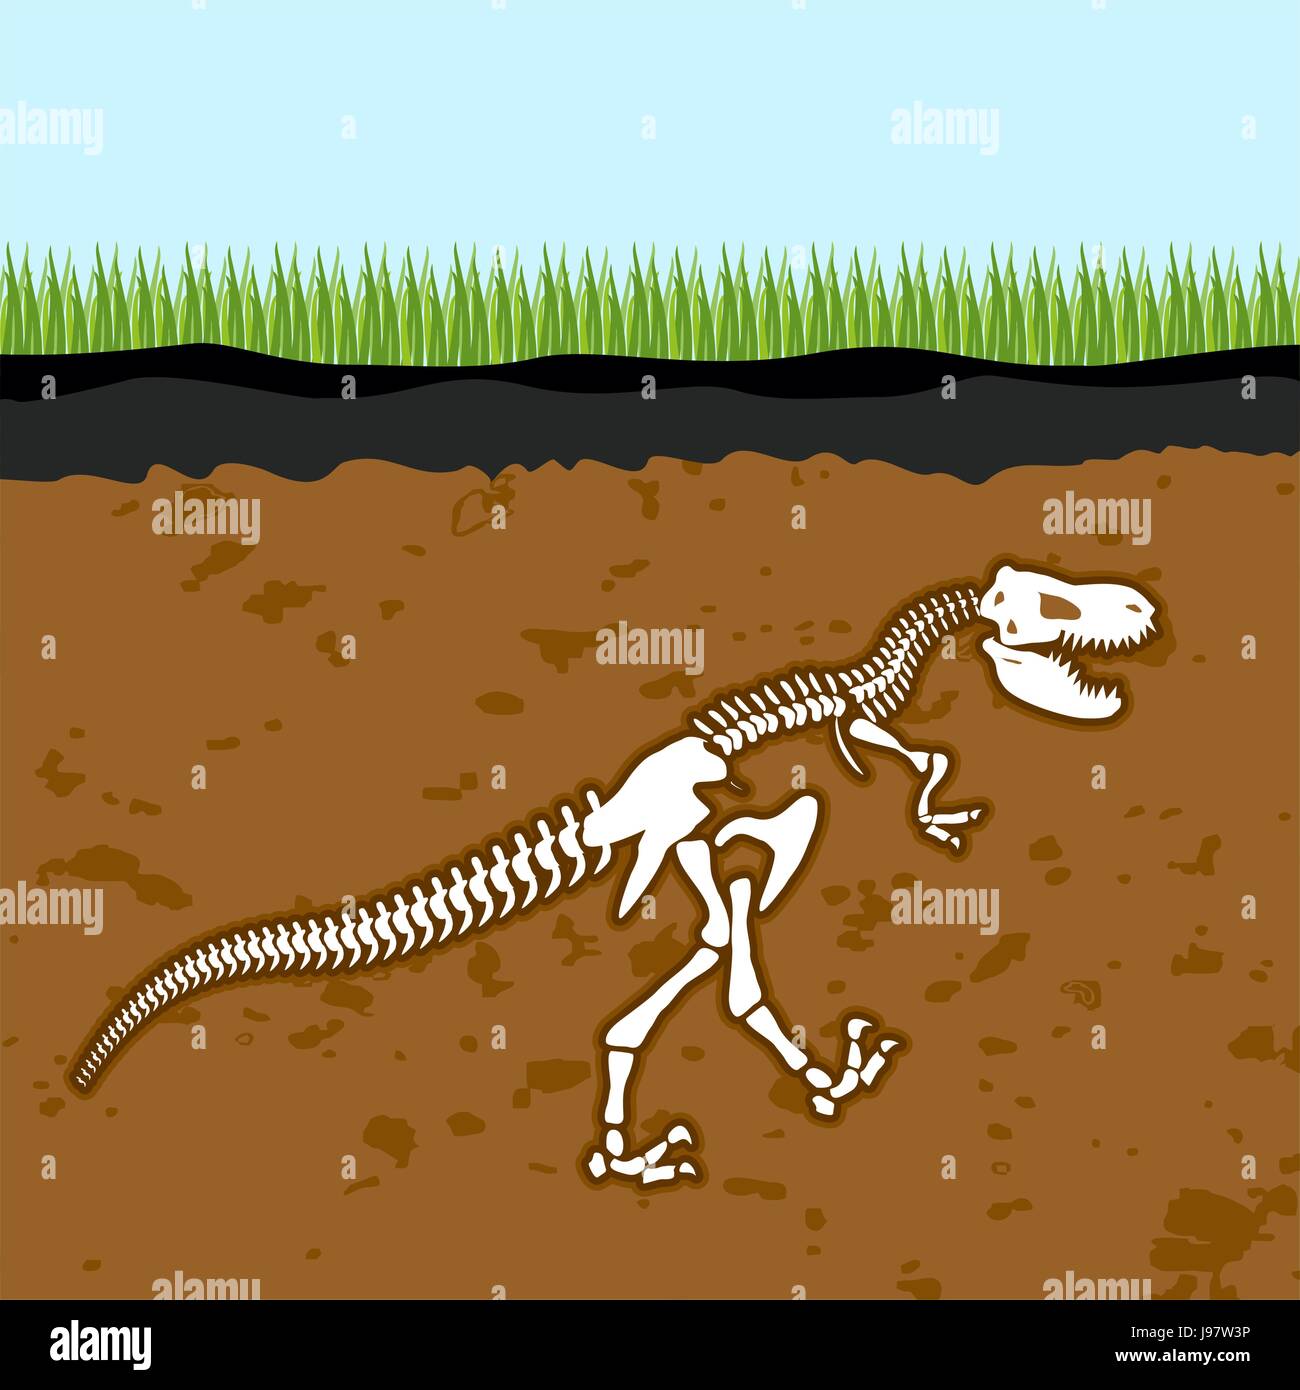 Squelette de Tyrannosaurus rex. Des os de dinosaure dans la terre. Ancien fossile animal redoutable. Tranche à travers le sol. Des fouilles archéologiques. La préhistoire Illustration de Vecteur